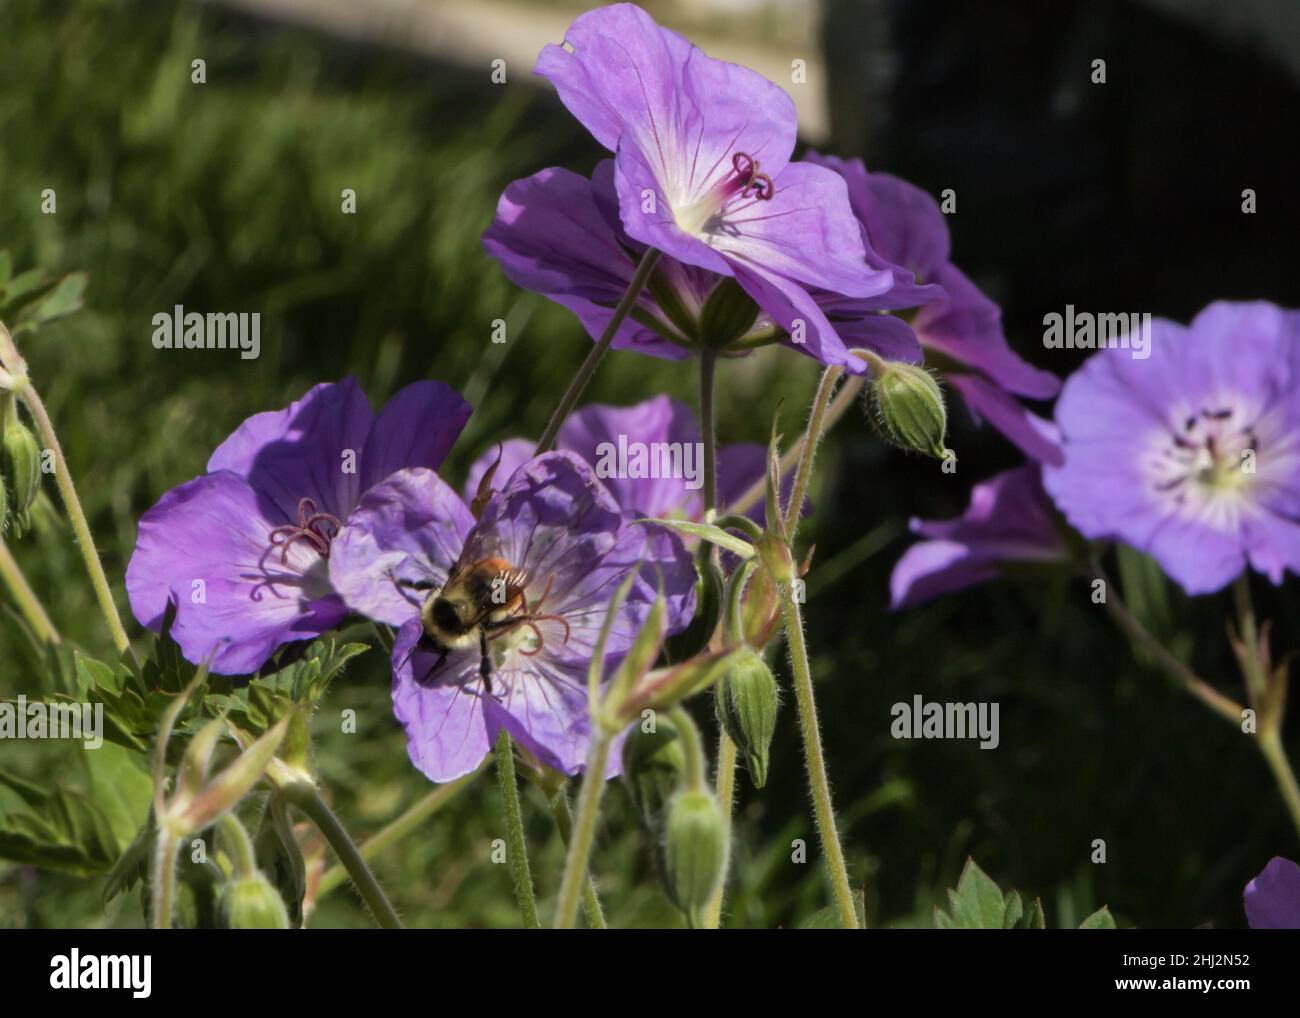 Le bourdon pollinisant une fleur pourpre Banque D'Images